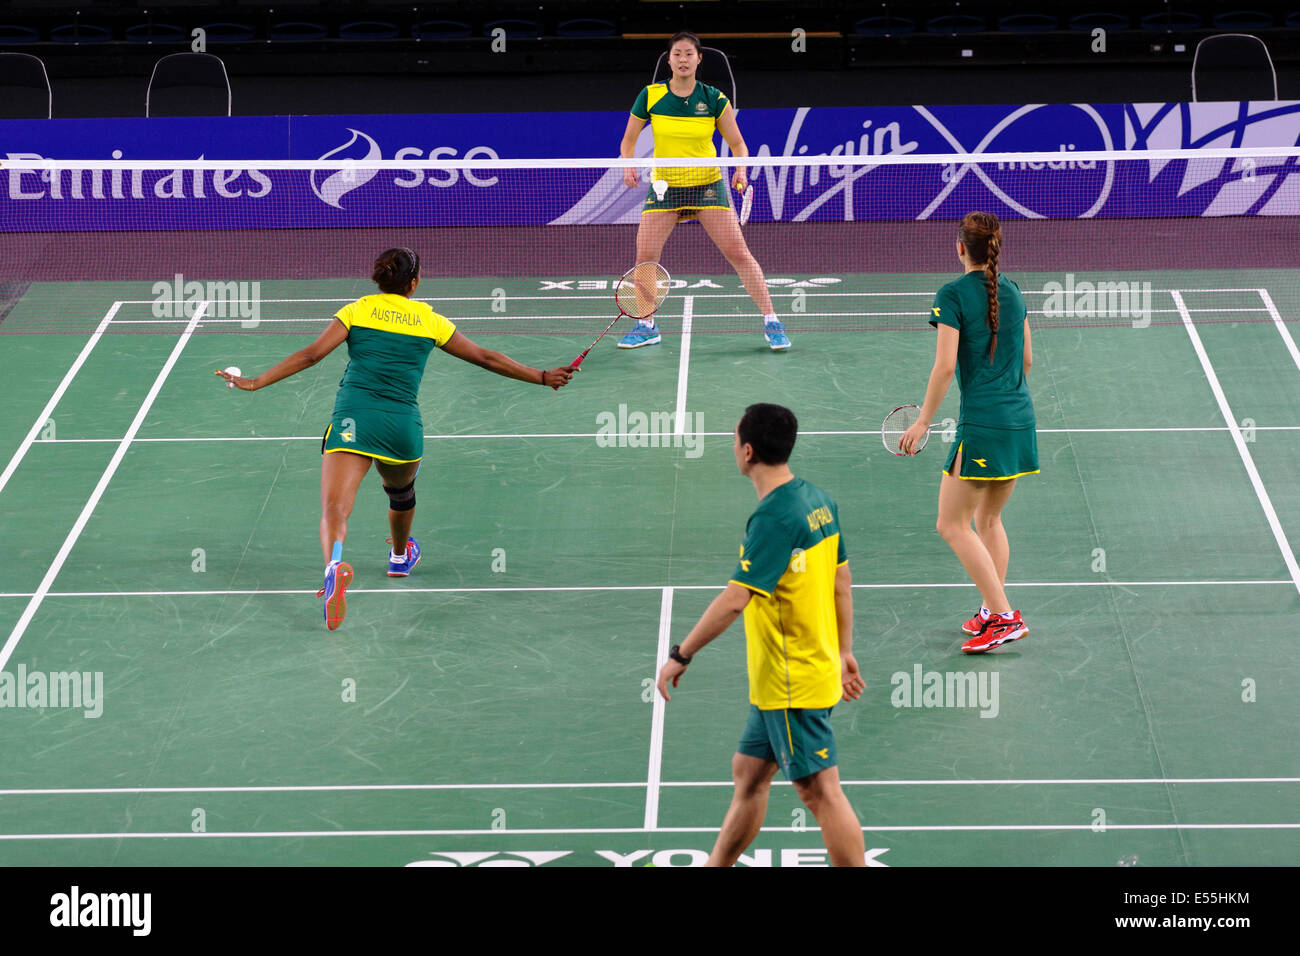 Emirates Arena, Glasgow, Scozia, Regno Unito, lunedì, 21 luglio 2014. Team Australia si allenerà presso la sede dei Glasgow 2014 Commonwealth Games Badminton Competitions Foto Stock